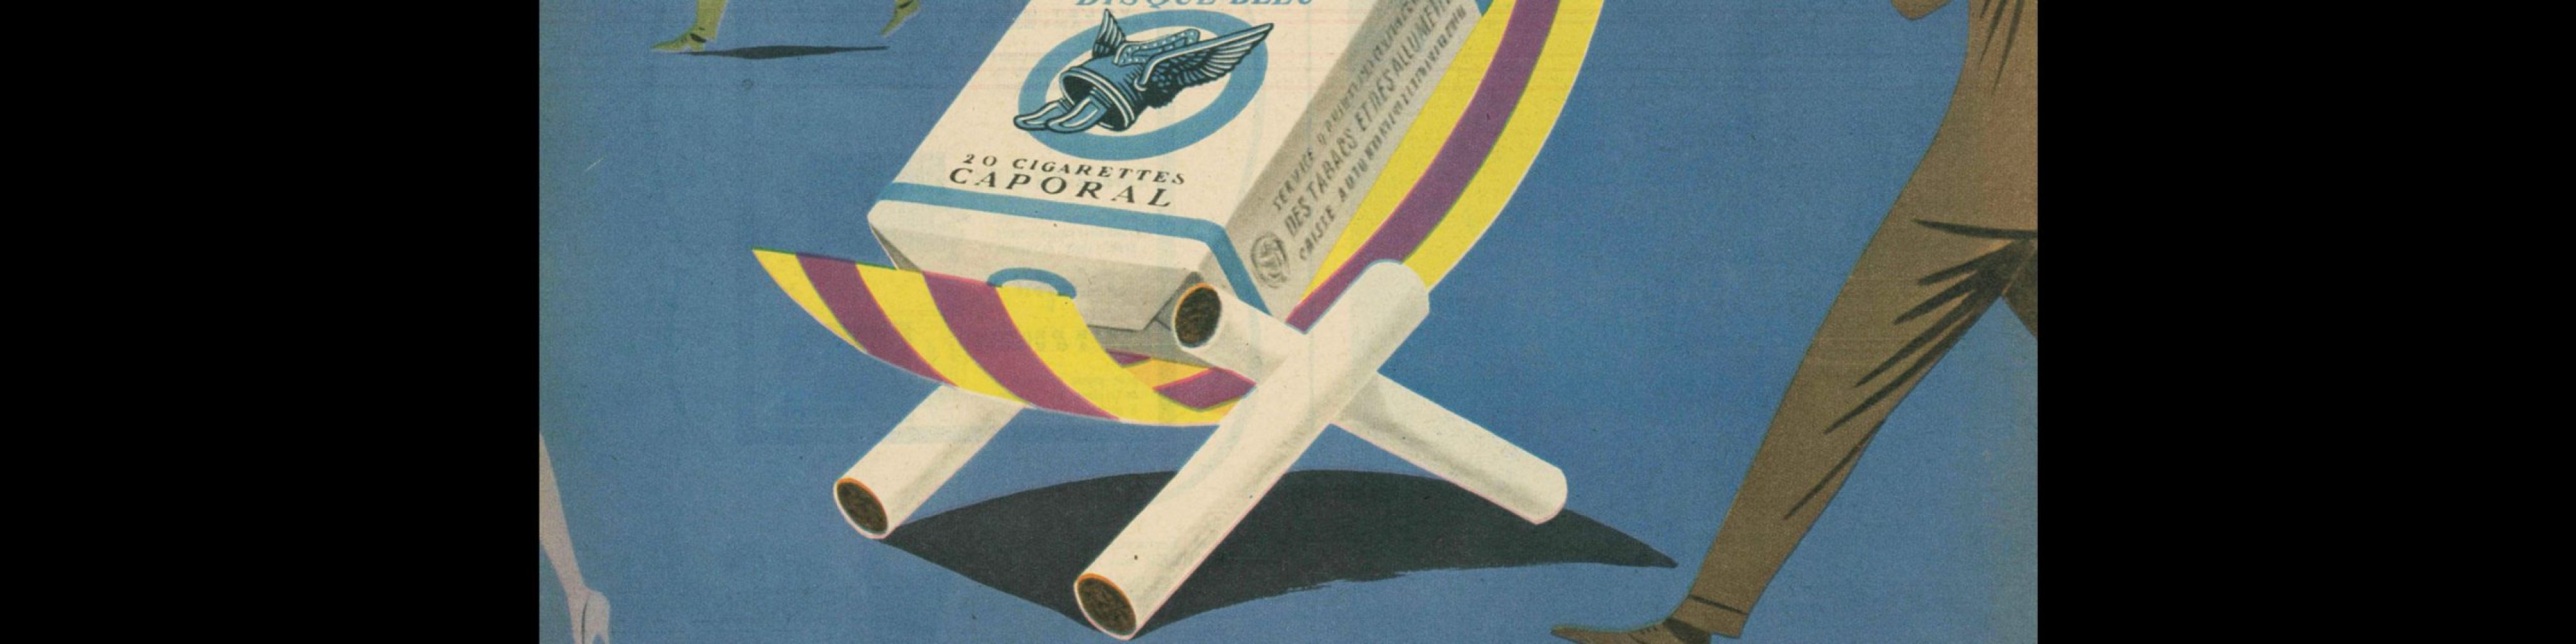 Disque Bleu, Advertisement, 1957. Design by Bernard Villemot.